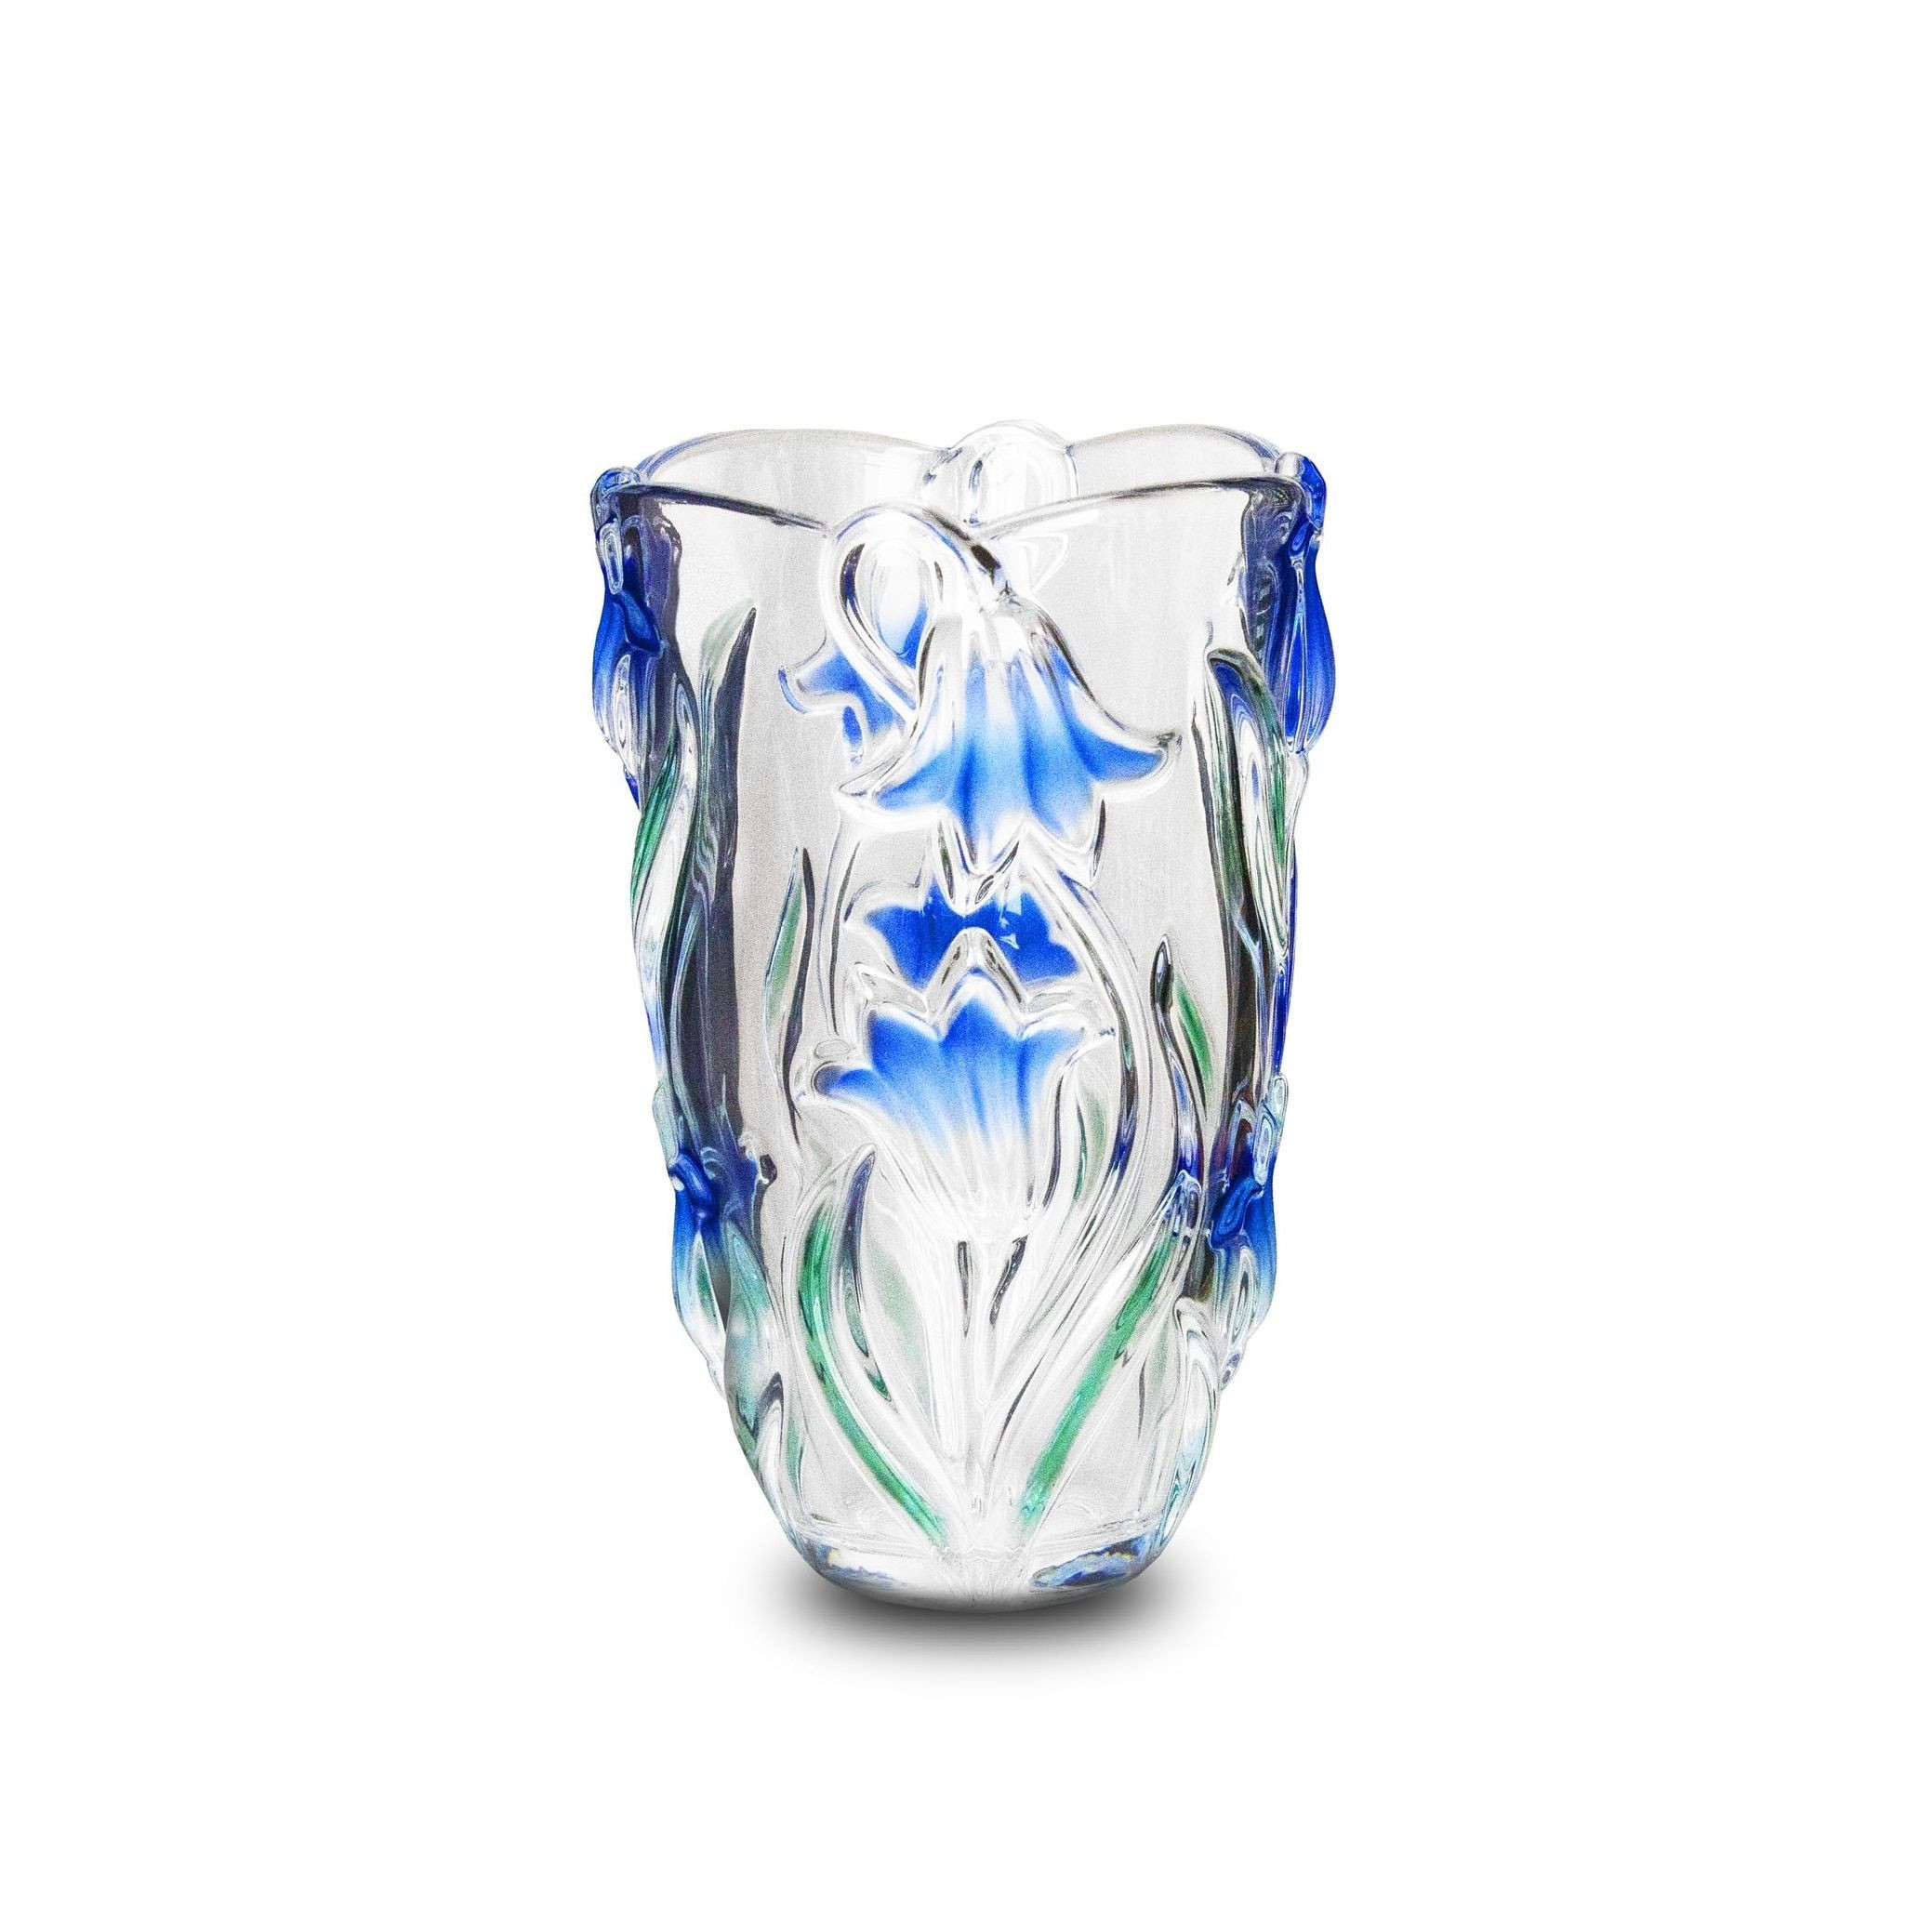 16 Awesome Clear Glass Ginger Jar Vase 2024 free download clear glass ginger jar vase of 10 fresh crystal blue vase bogekompresorturkiye com in studio silversmiths blue danube collection crystal vase